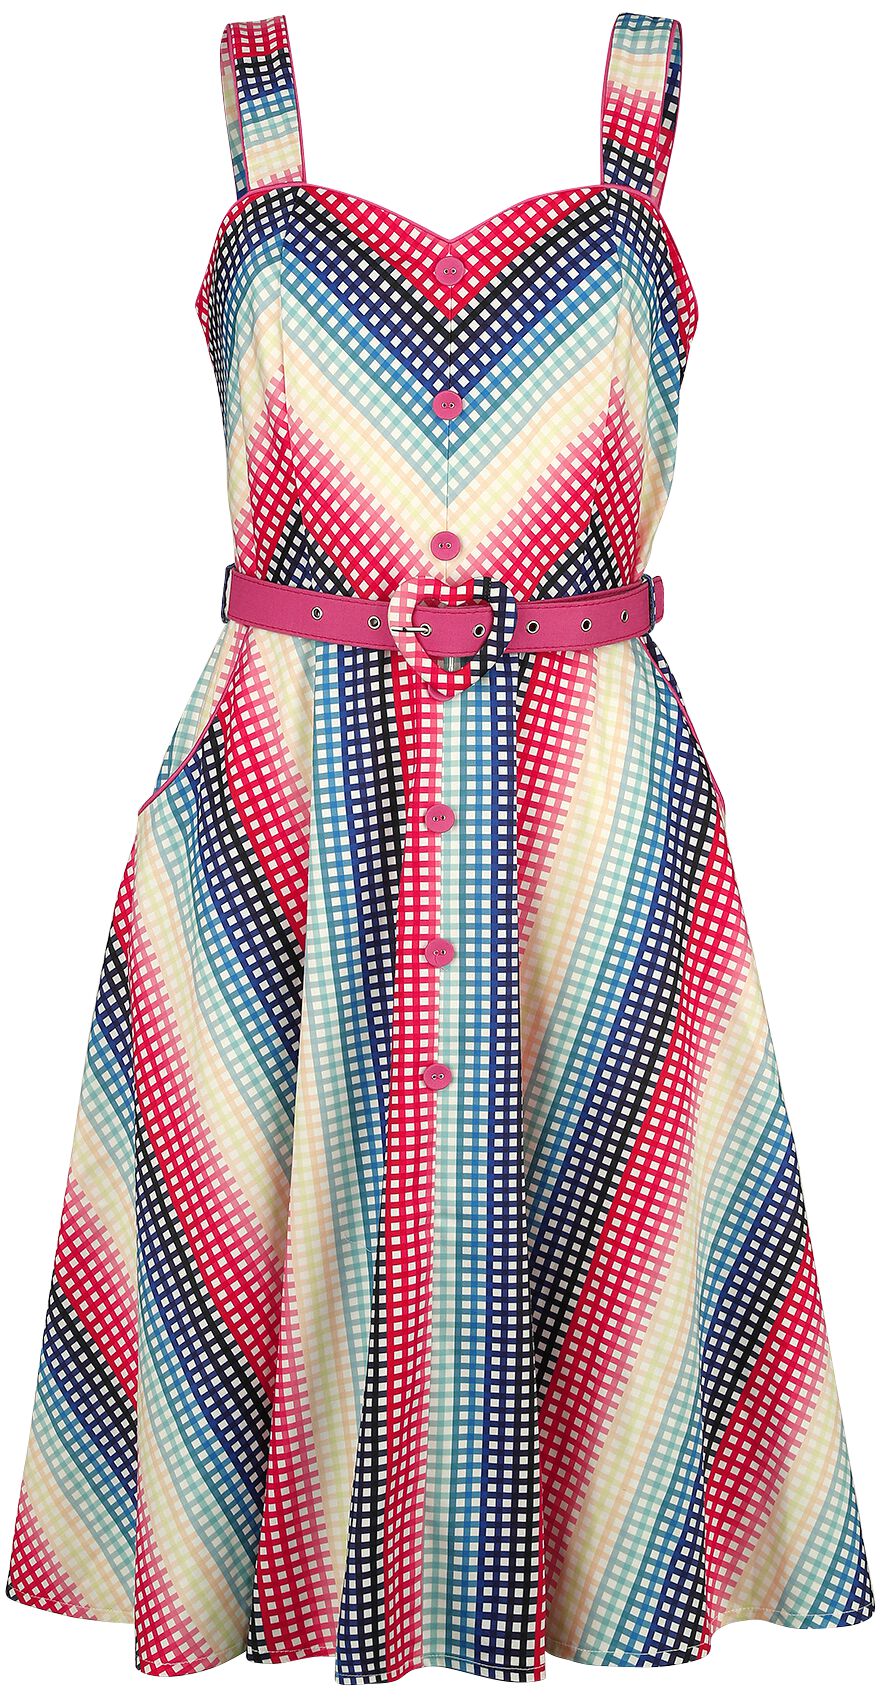 Image of Abito media lunghezza Rockabilly di Voodoo Vixen - Serene Rainbow Gingham Flare Dress - S a 4XL - Donna - multicolore